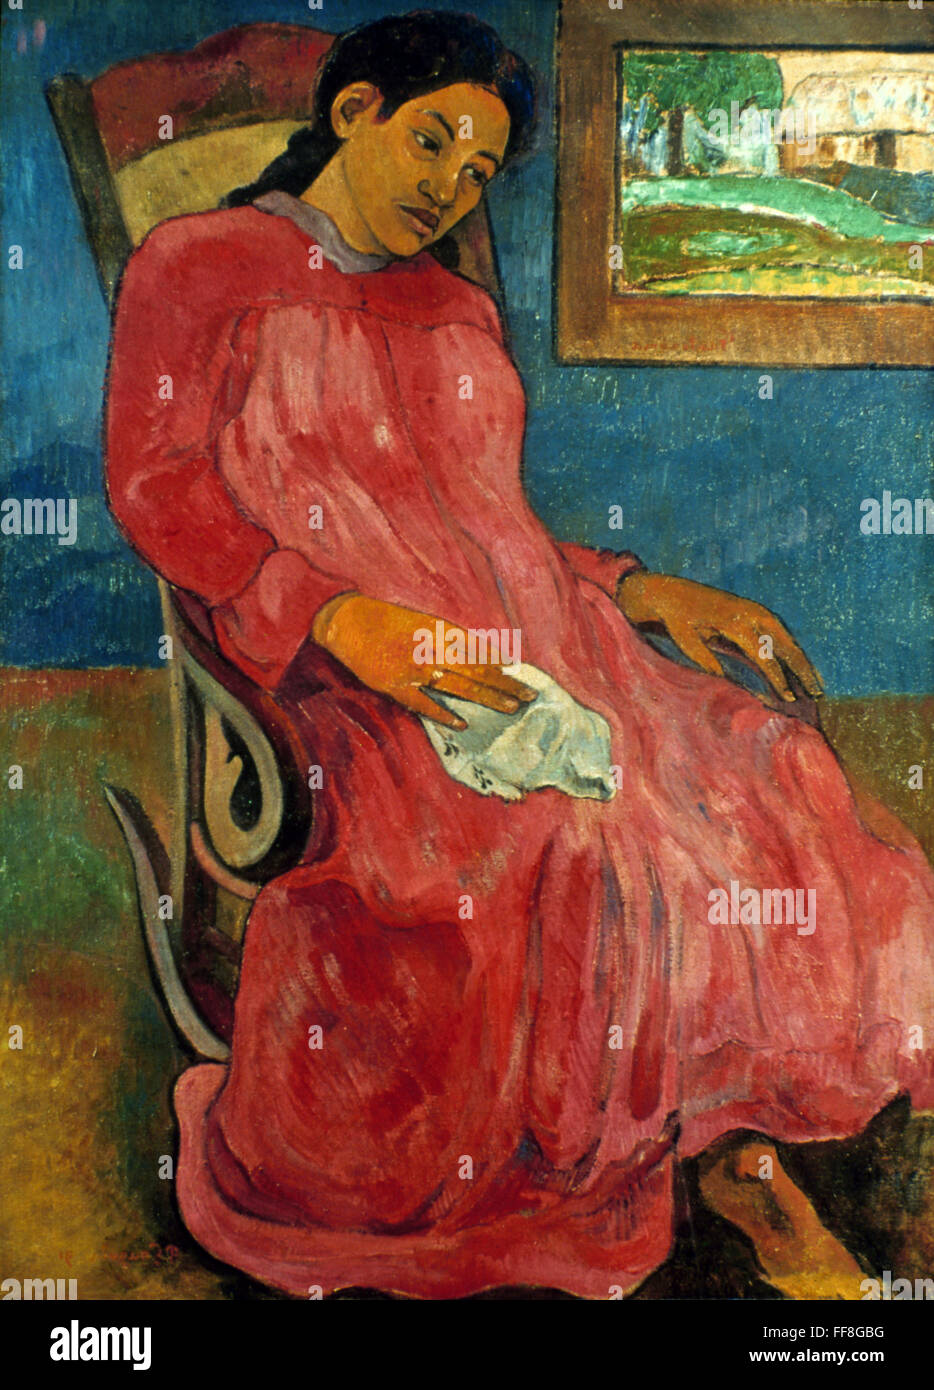 GAUGUIN : REVERIE, 1891. /NPaul Gauguin : Reverie (Melancolique). Huile sur toile, 1891. Banque D'Images